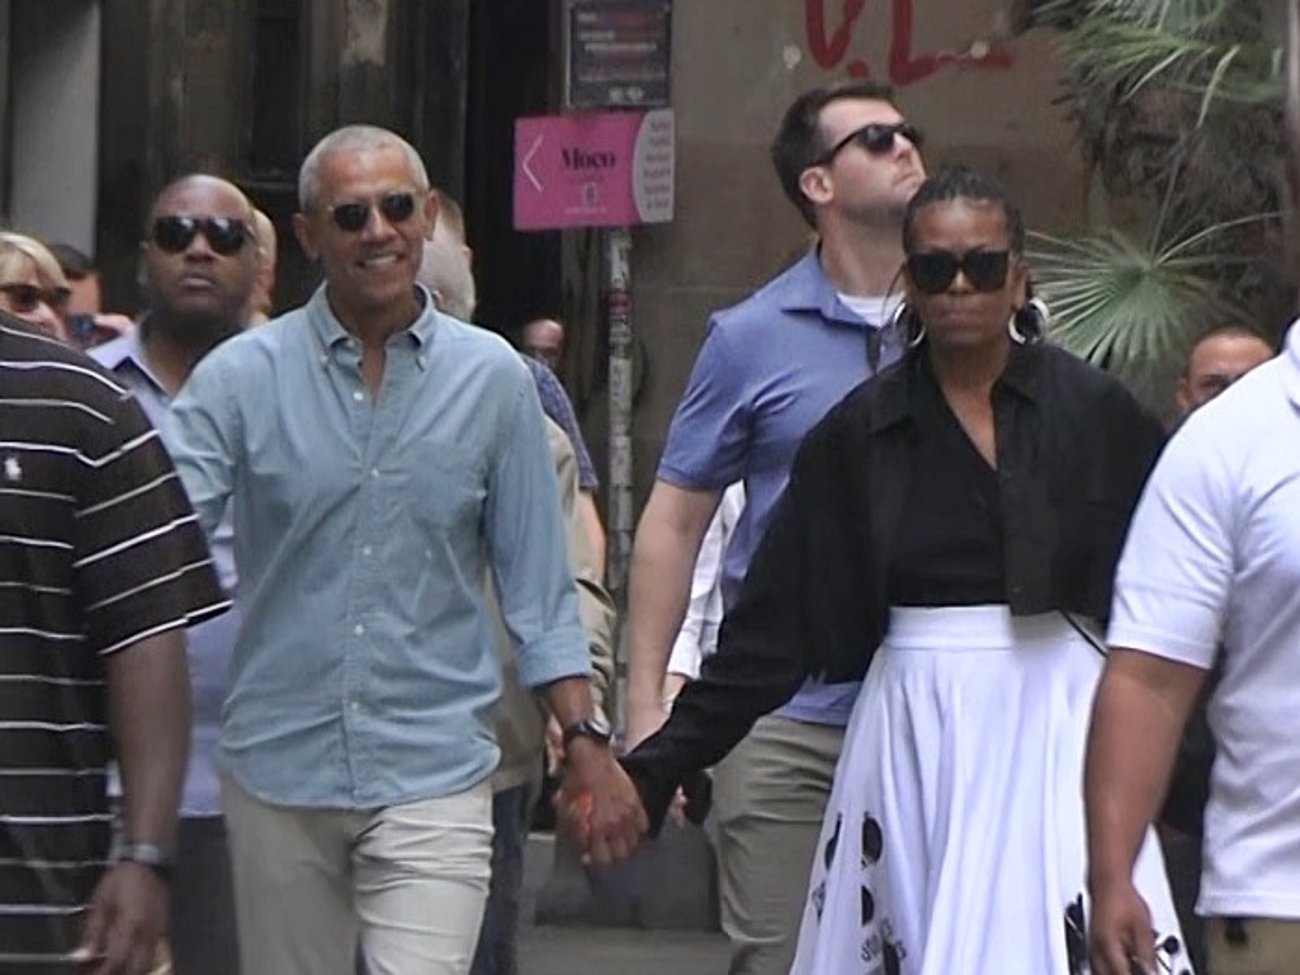 Barack et Michelle Obama affichent leur amour dans les rues de Barcelone